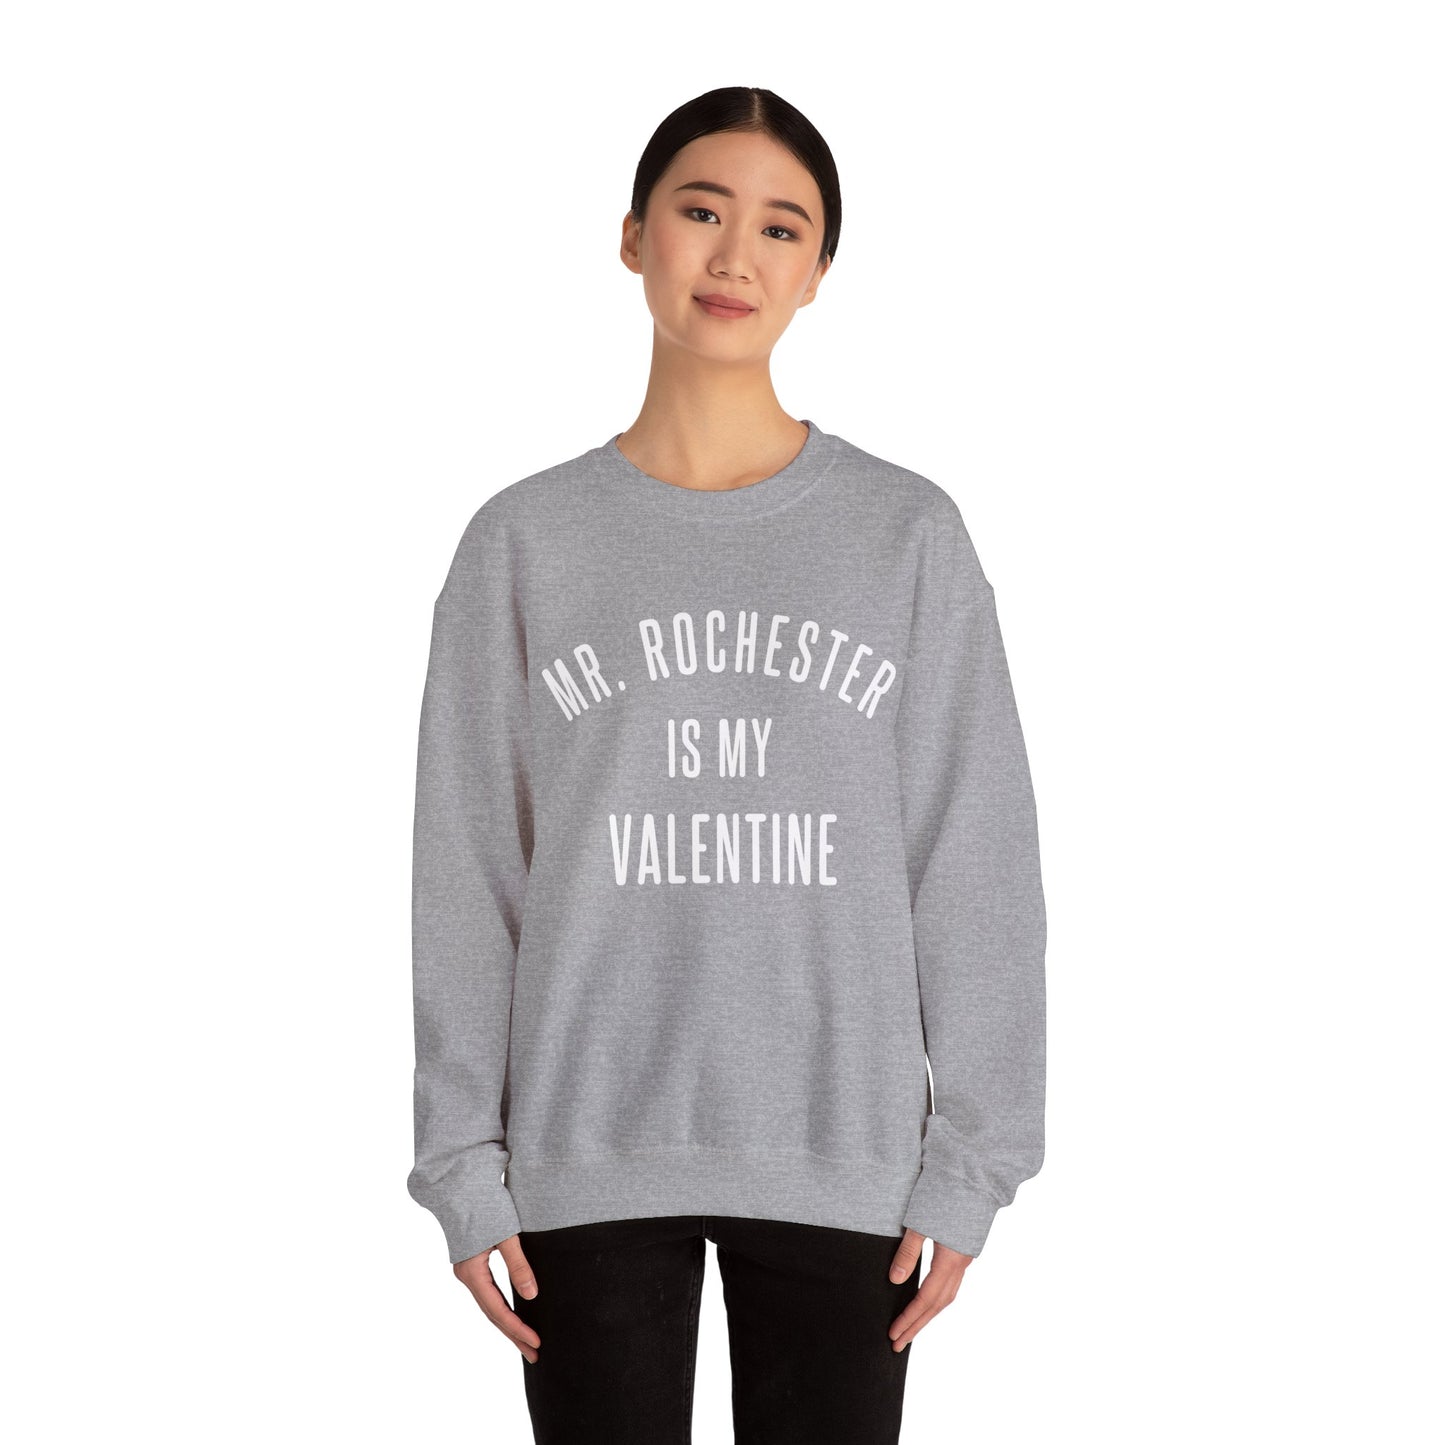 Mr. Rochester is my Valentine Crewneck Sweatshirt